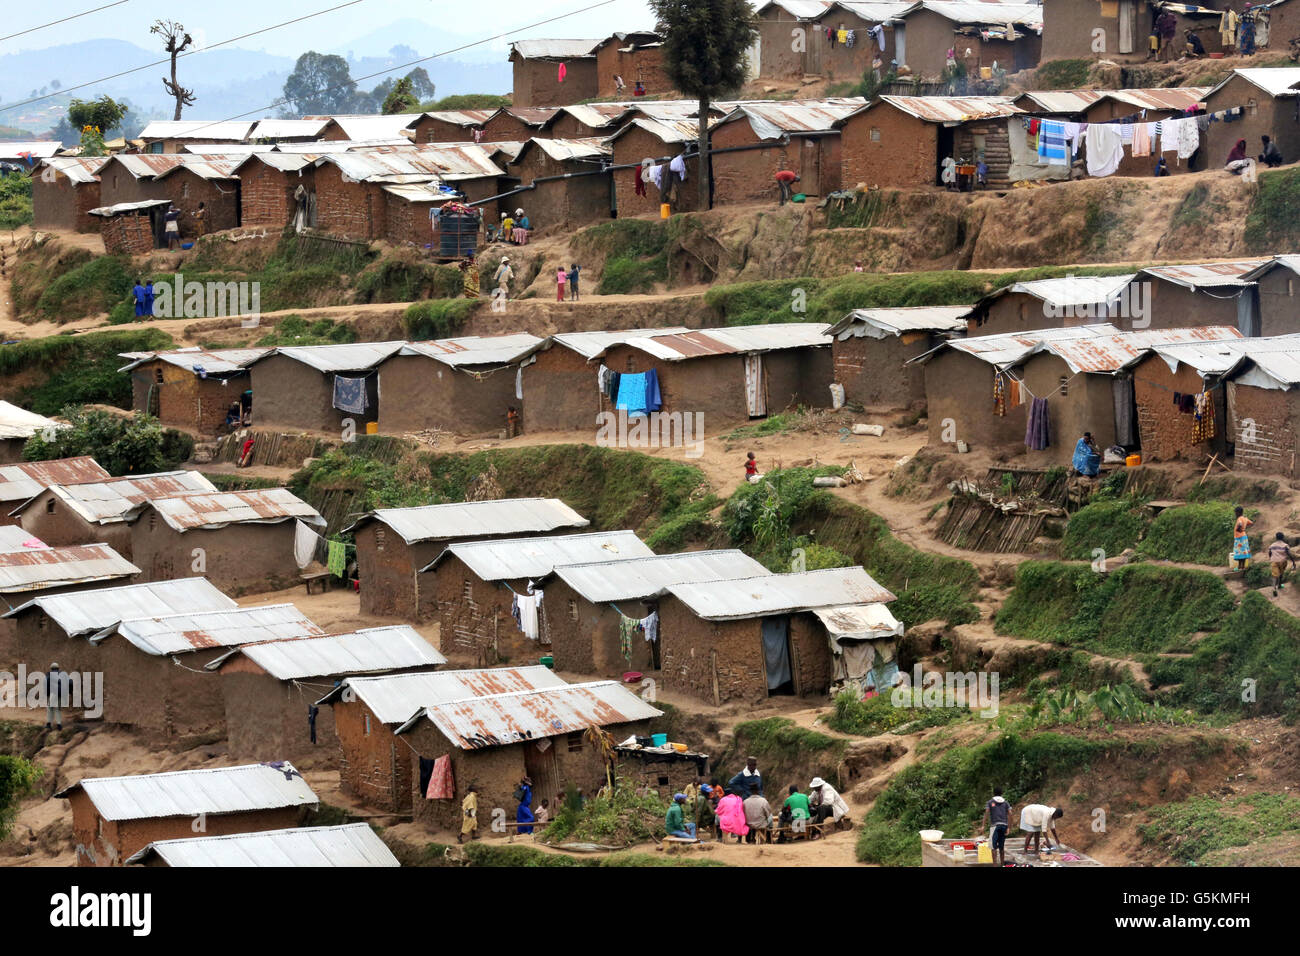 Lehm-Hütten in der Refugee Camp Kigeme in der Nähe von Gikongoro, Ruanda, Afrika - Camp befindet sich im Nyamagabe Bezirk der Provinz, etwa 150 Km von Kigali und 120 km von der Grenze Bukavu. Das Lager entstand im Jahr 2012 auf Host Flüchtlinge geflohenen heftige Kämpfe zwischen der FARDC Soldaten und die M23-Rebellen. Das Camp statt ursprünglich rund 2.100 burundischen Flüchtlingen bis Mai 2009. Die Regierung Ruandas wieder eröffnet und erweitert es um Tausende von Flüchtlingen zu hosten, die zeitlich Nkamira Transit Center in Rubavu nahe der Grenze zu Ruanda eingegangen waren im Juni 2012 Stockfoto